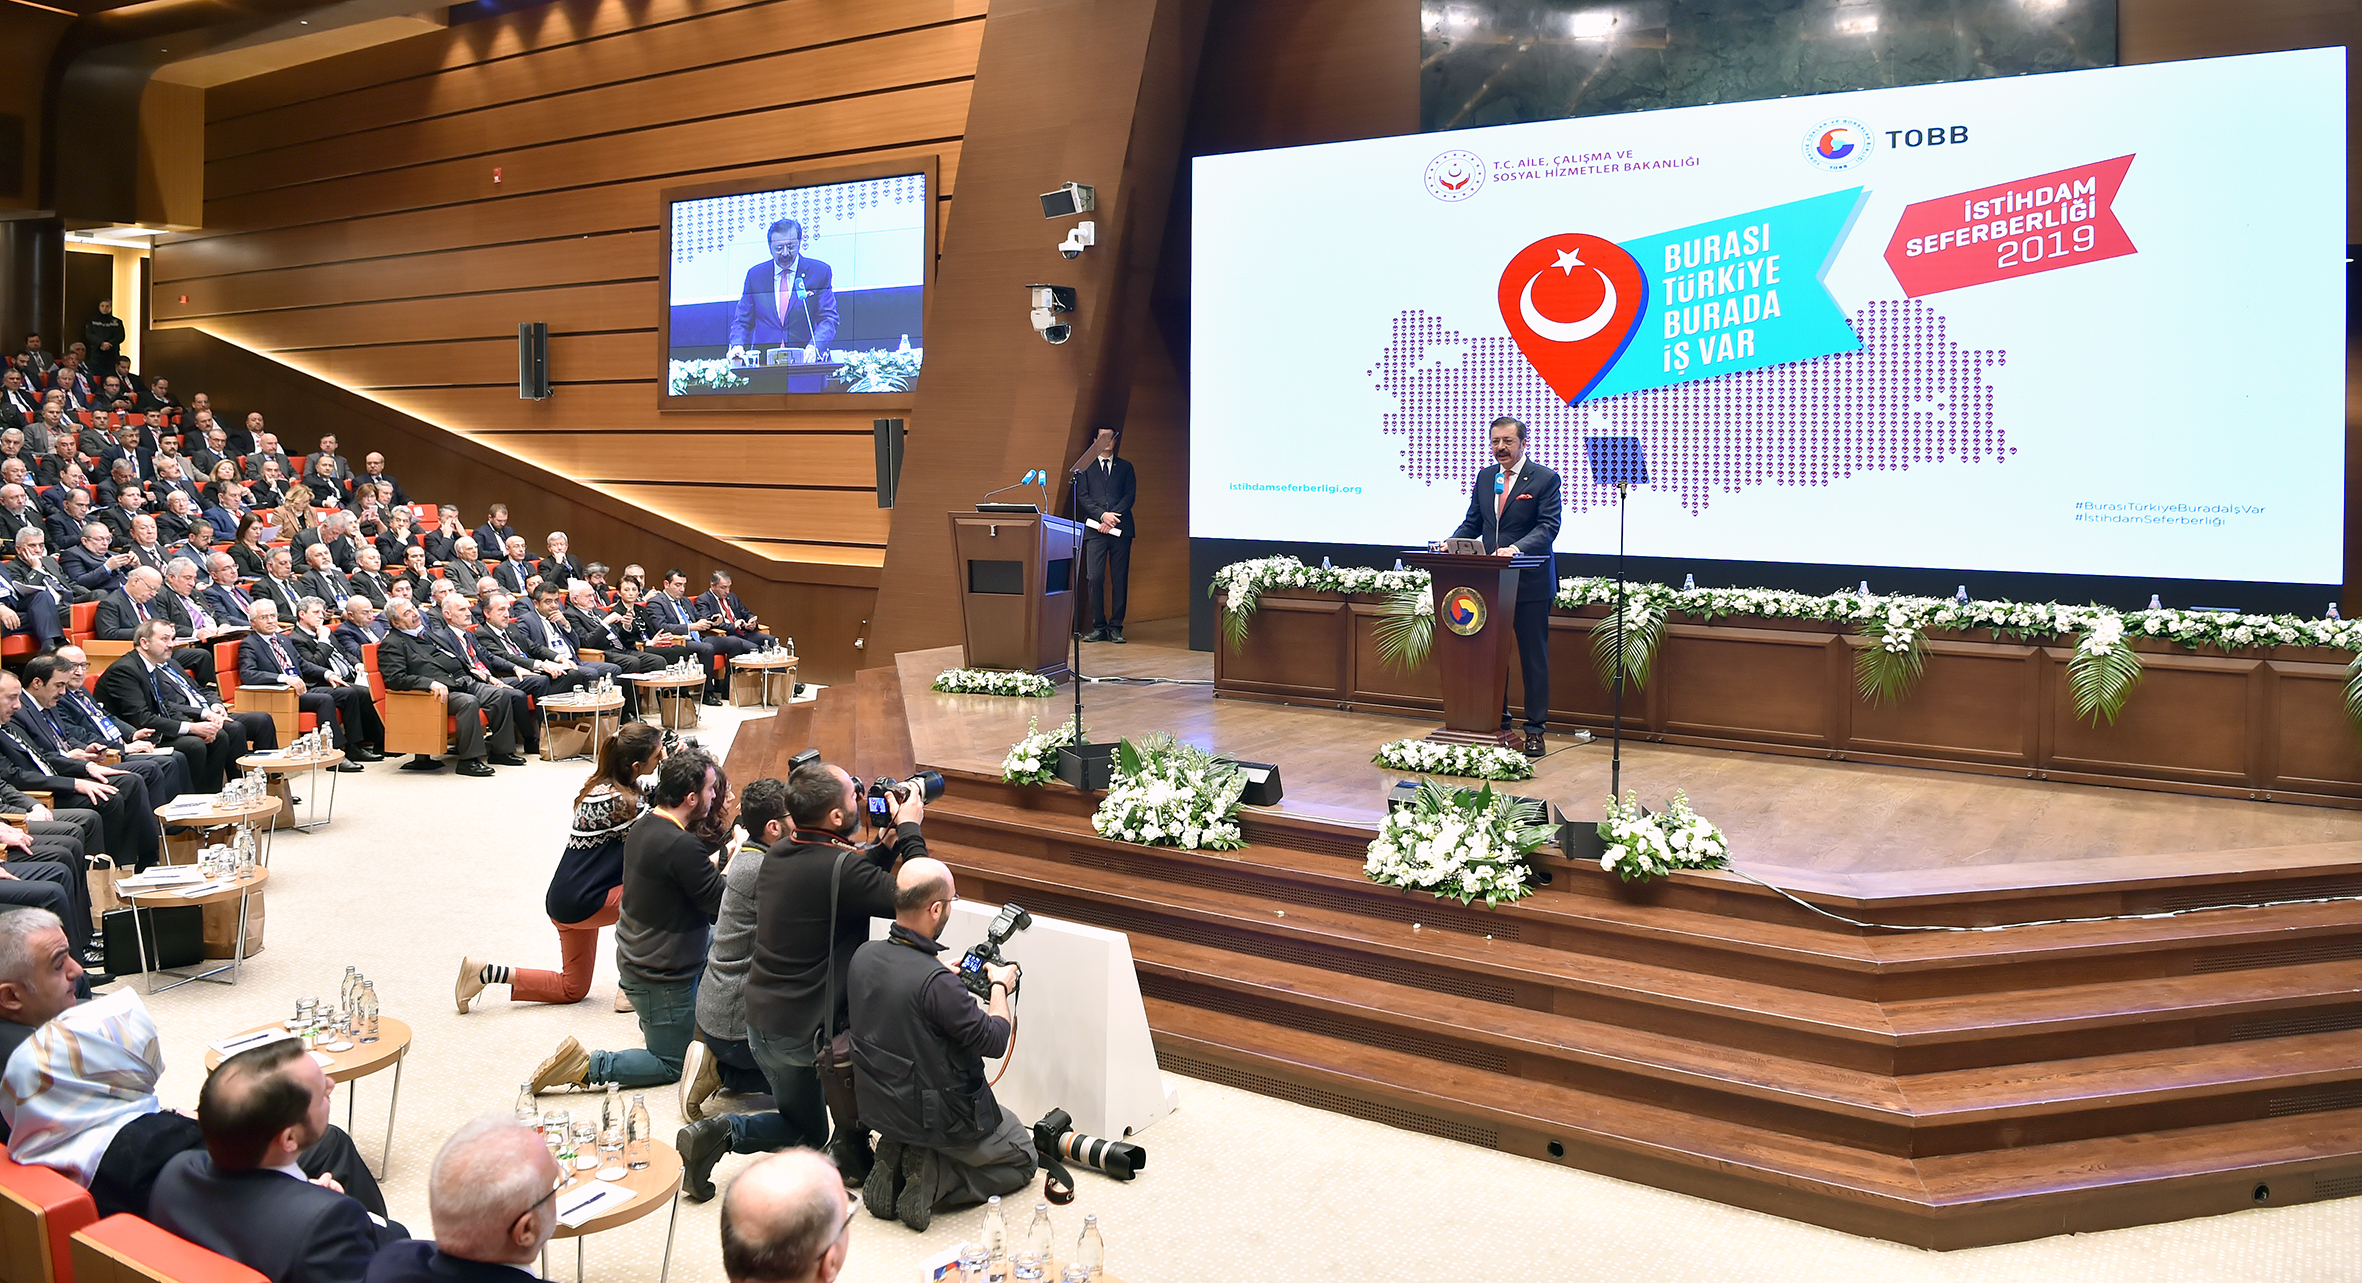 İstihdam Seferberliği 2019 Tanıtım Toplantısı TOBB Başkanı M. Rifat Hisarcıklıoğlu’nun evsahipliğinde yapıldı.​